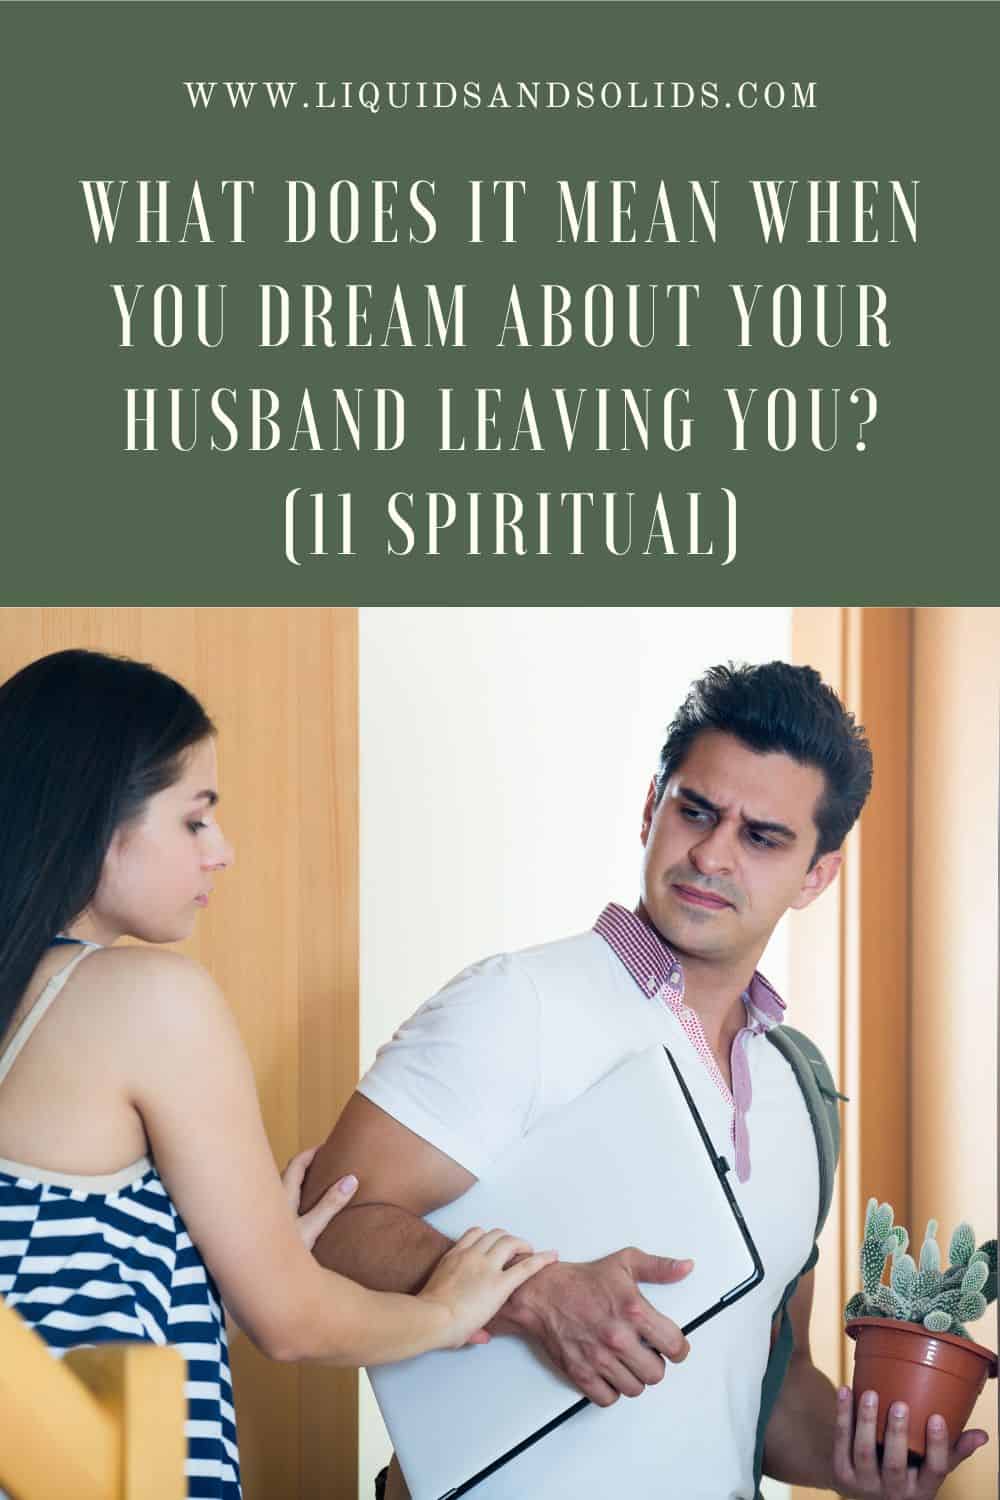  تحلم بترك زوجك لك؟ (11 معاني روحية)